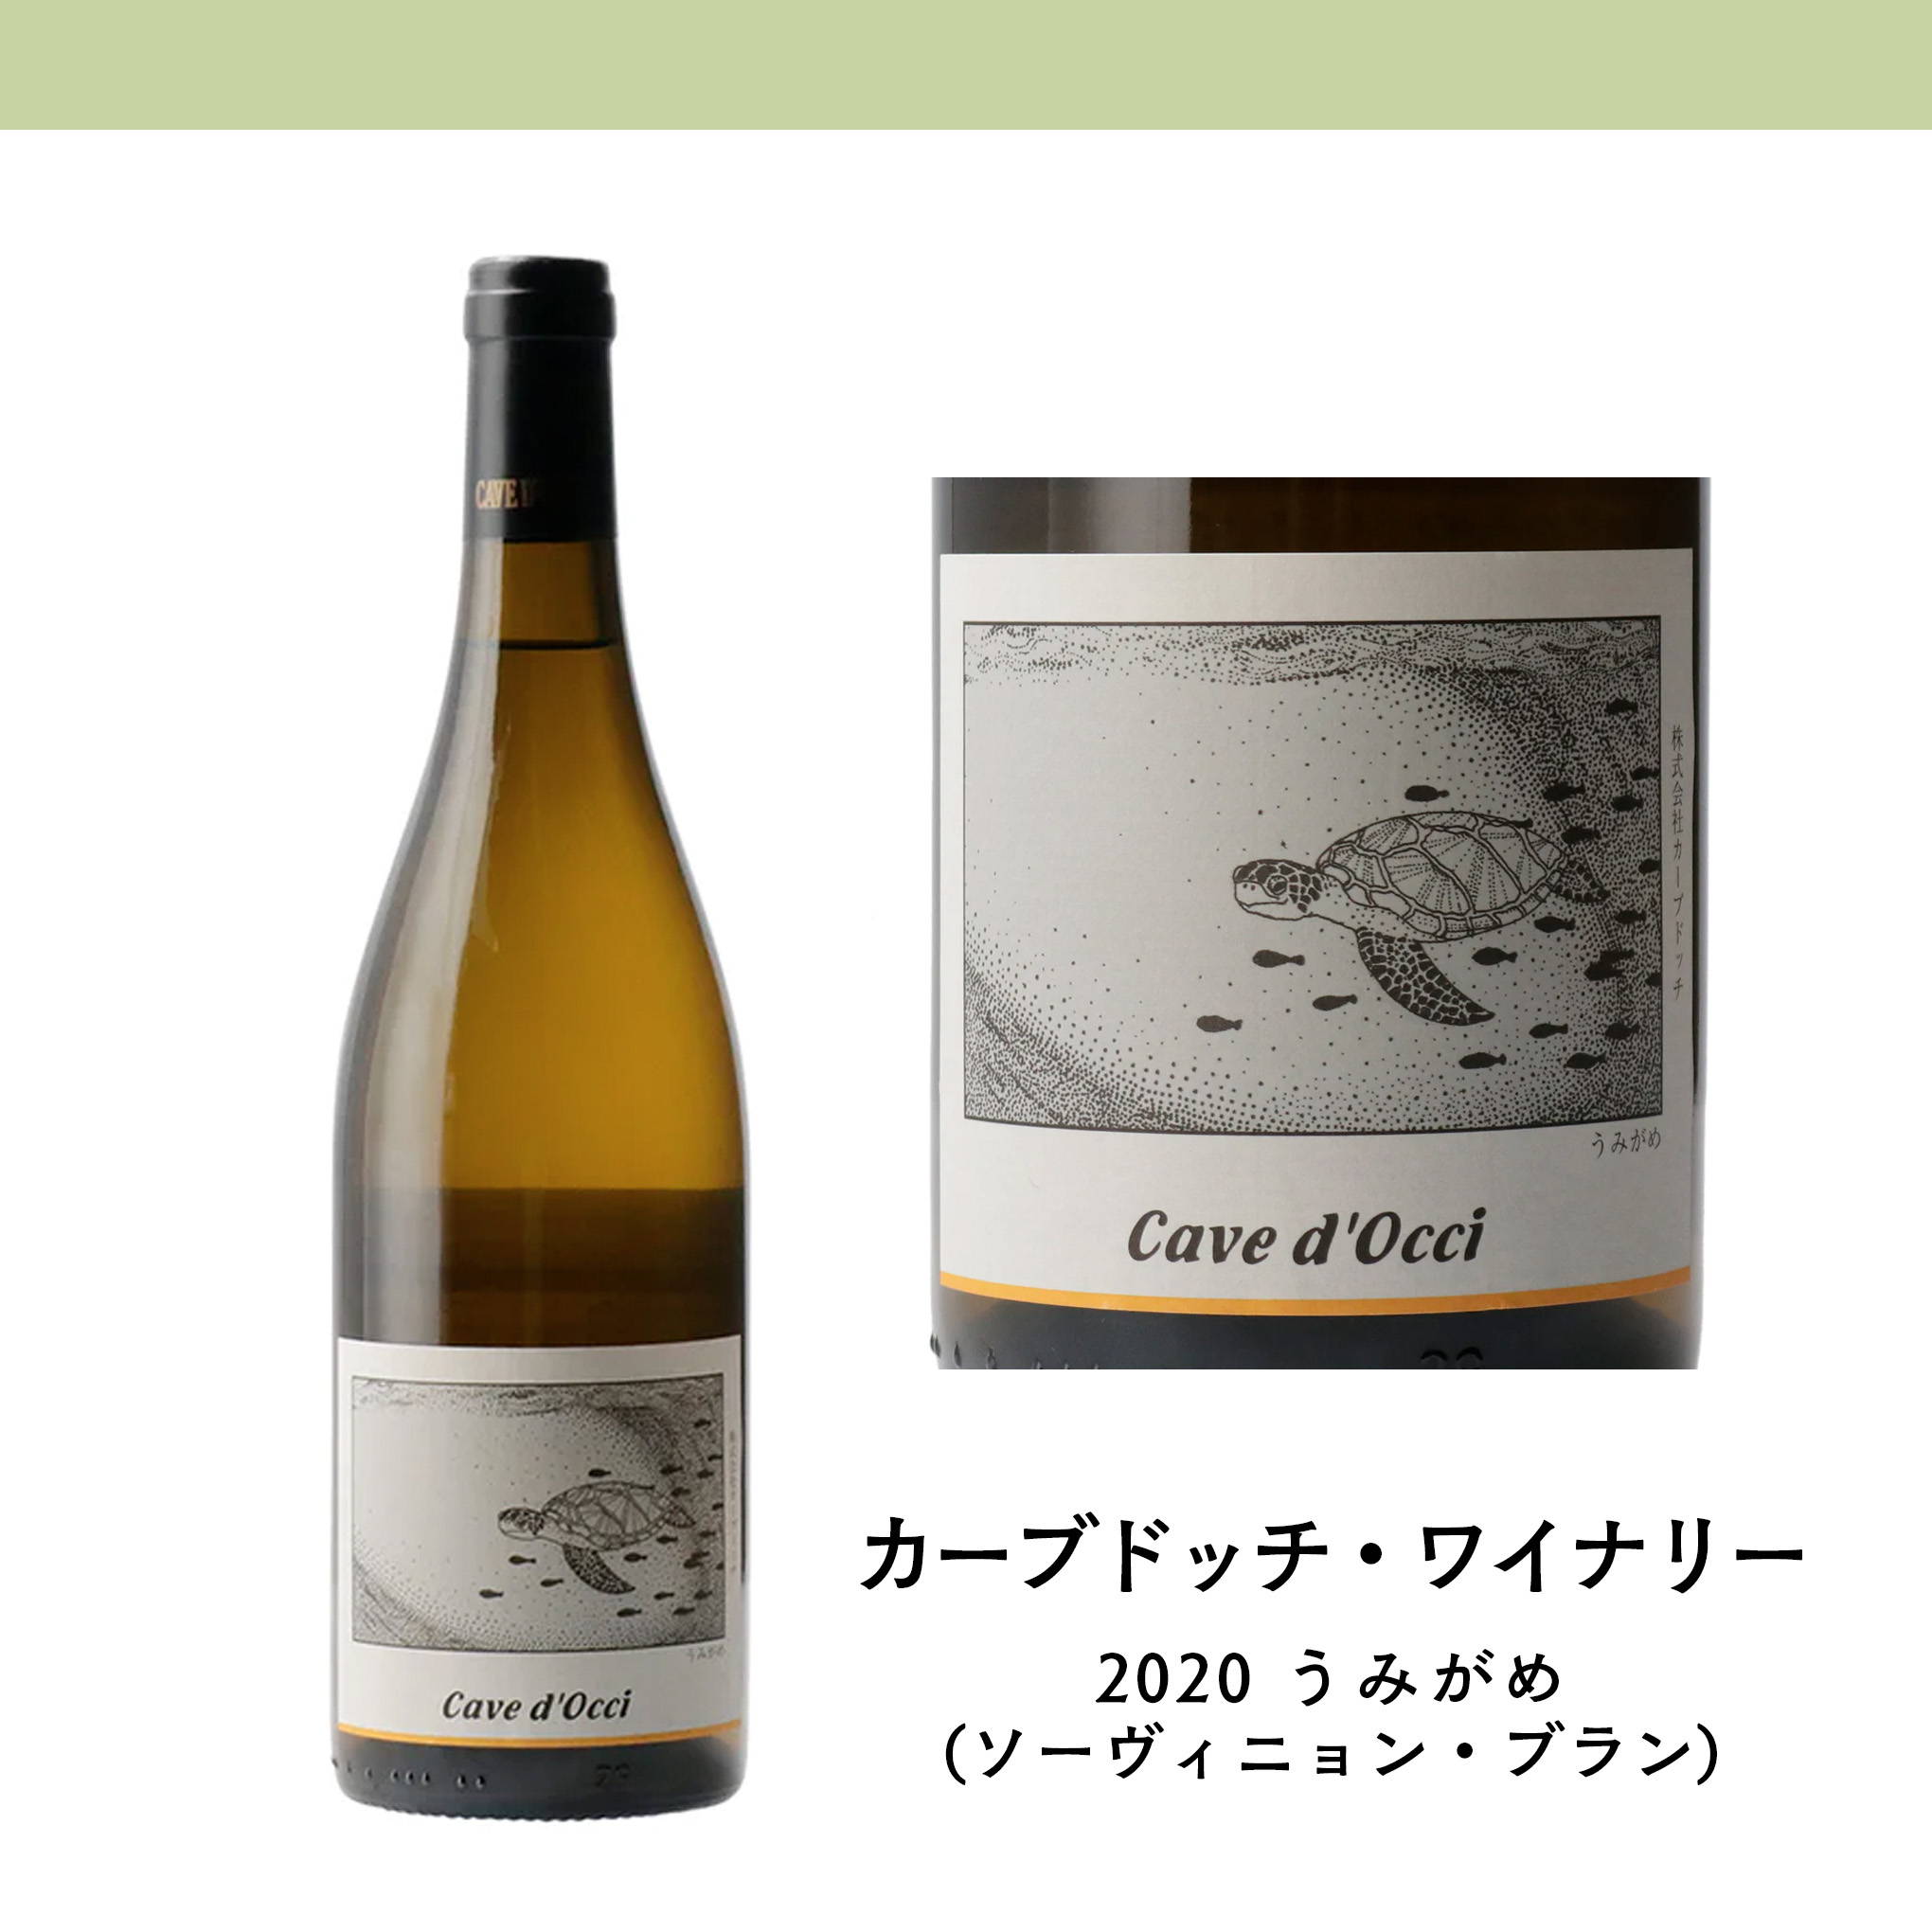 醸造家・掛川史人氏のセンスが光る人気銘柄！自社畑のソーヴィニヨン・ブランを使用し、体に染み入る優しいニュアンスを目指して造られた白ワイン。